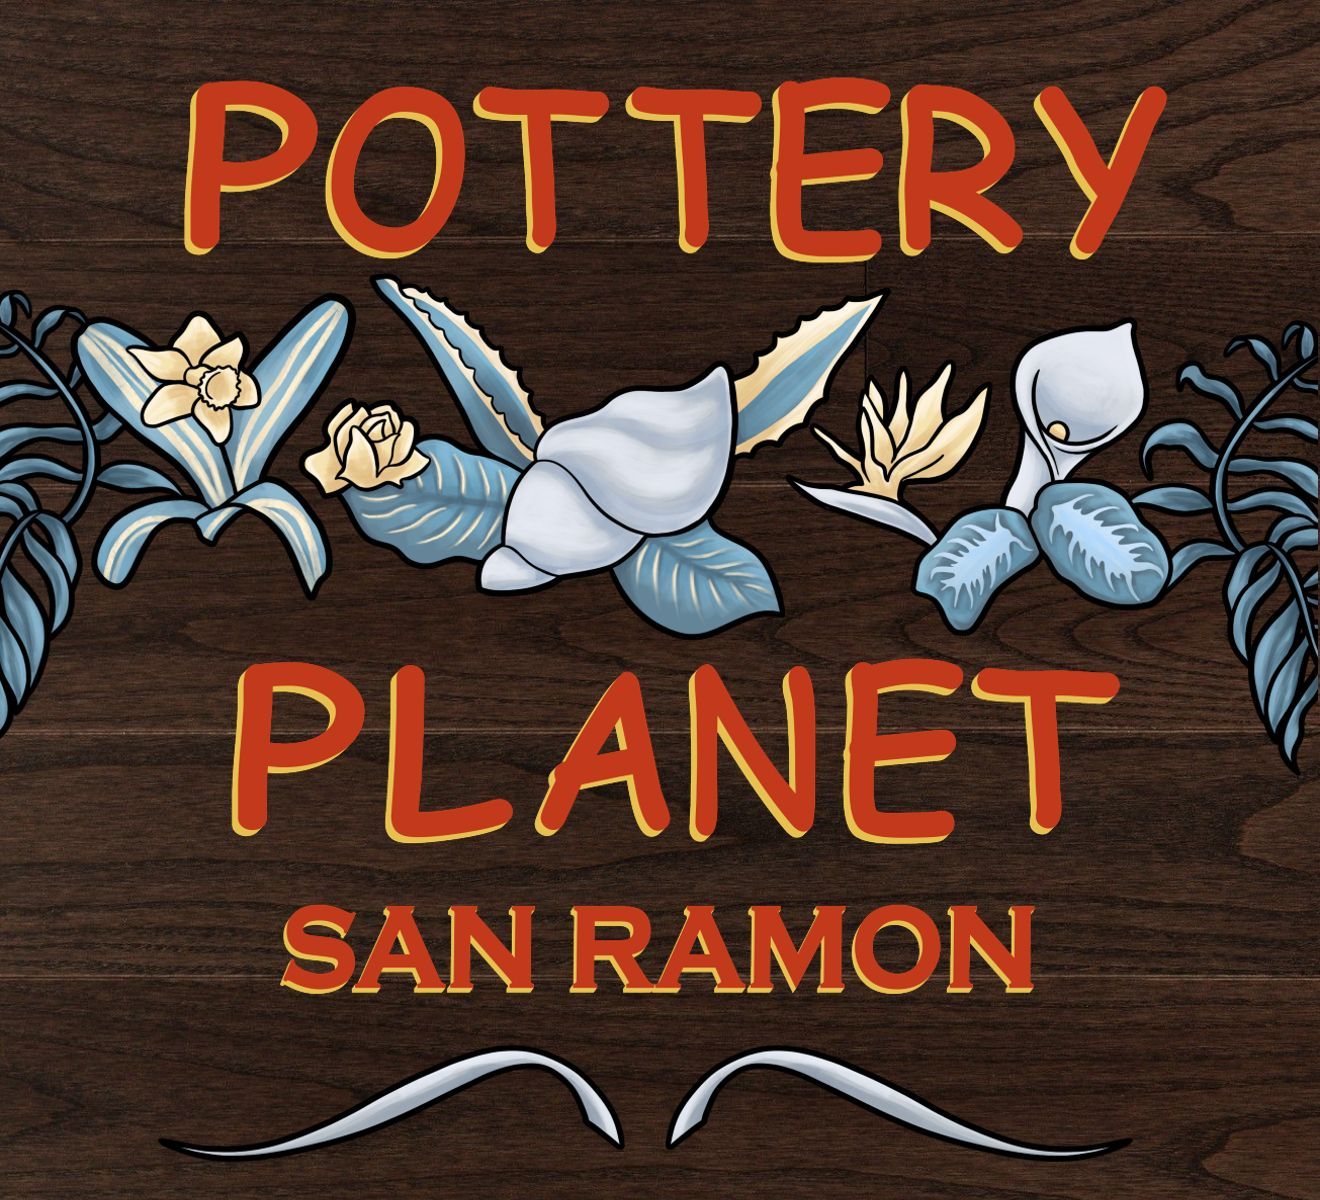 Pottery Planet - San Ramon logo